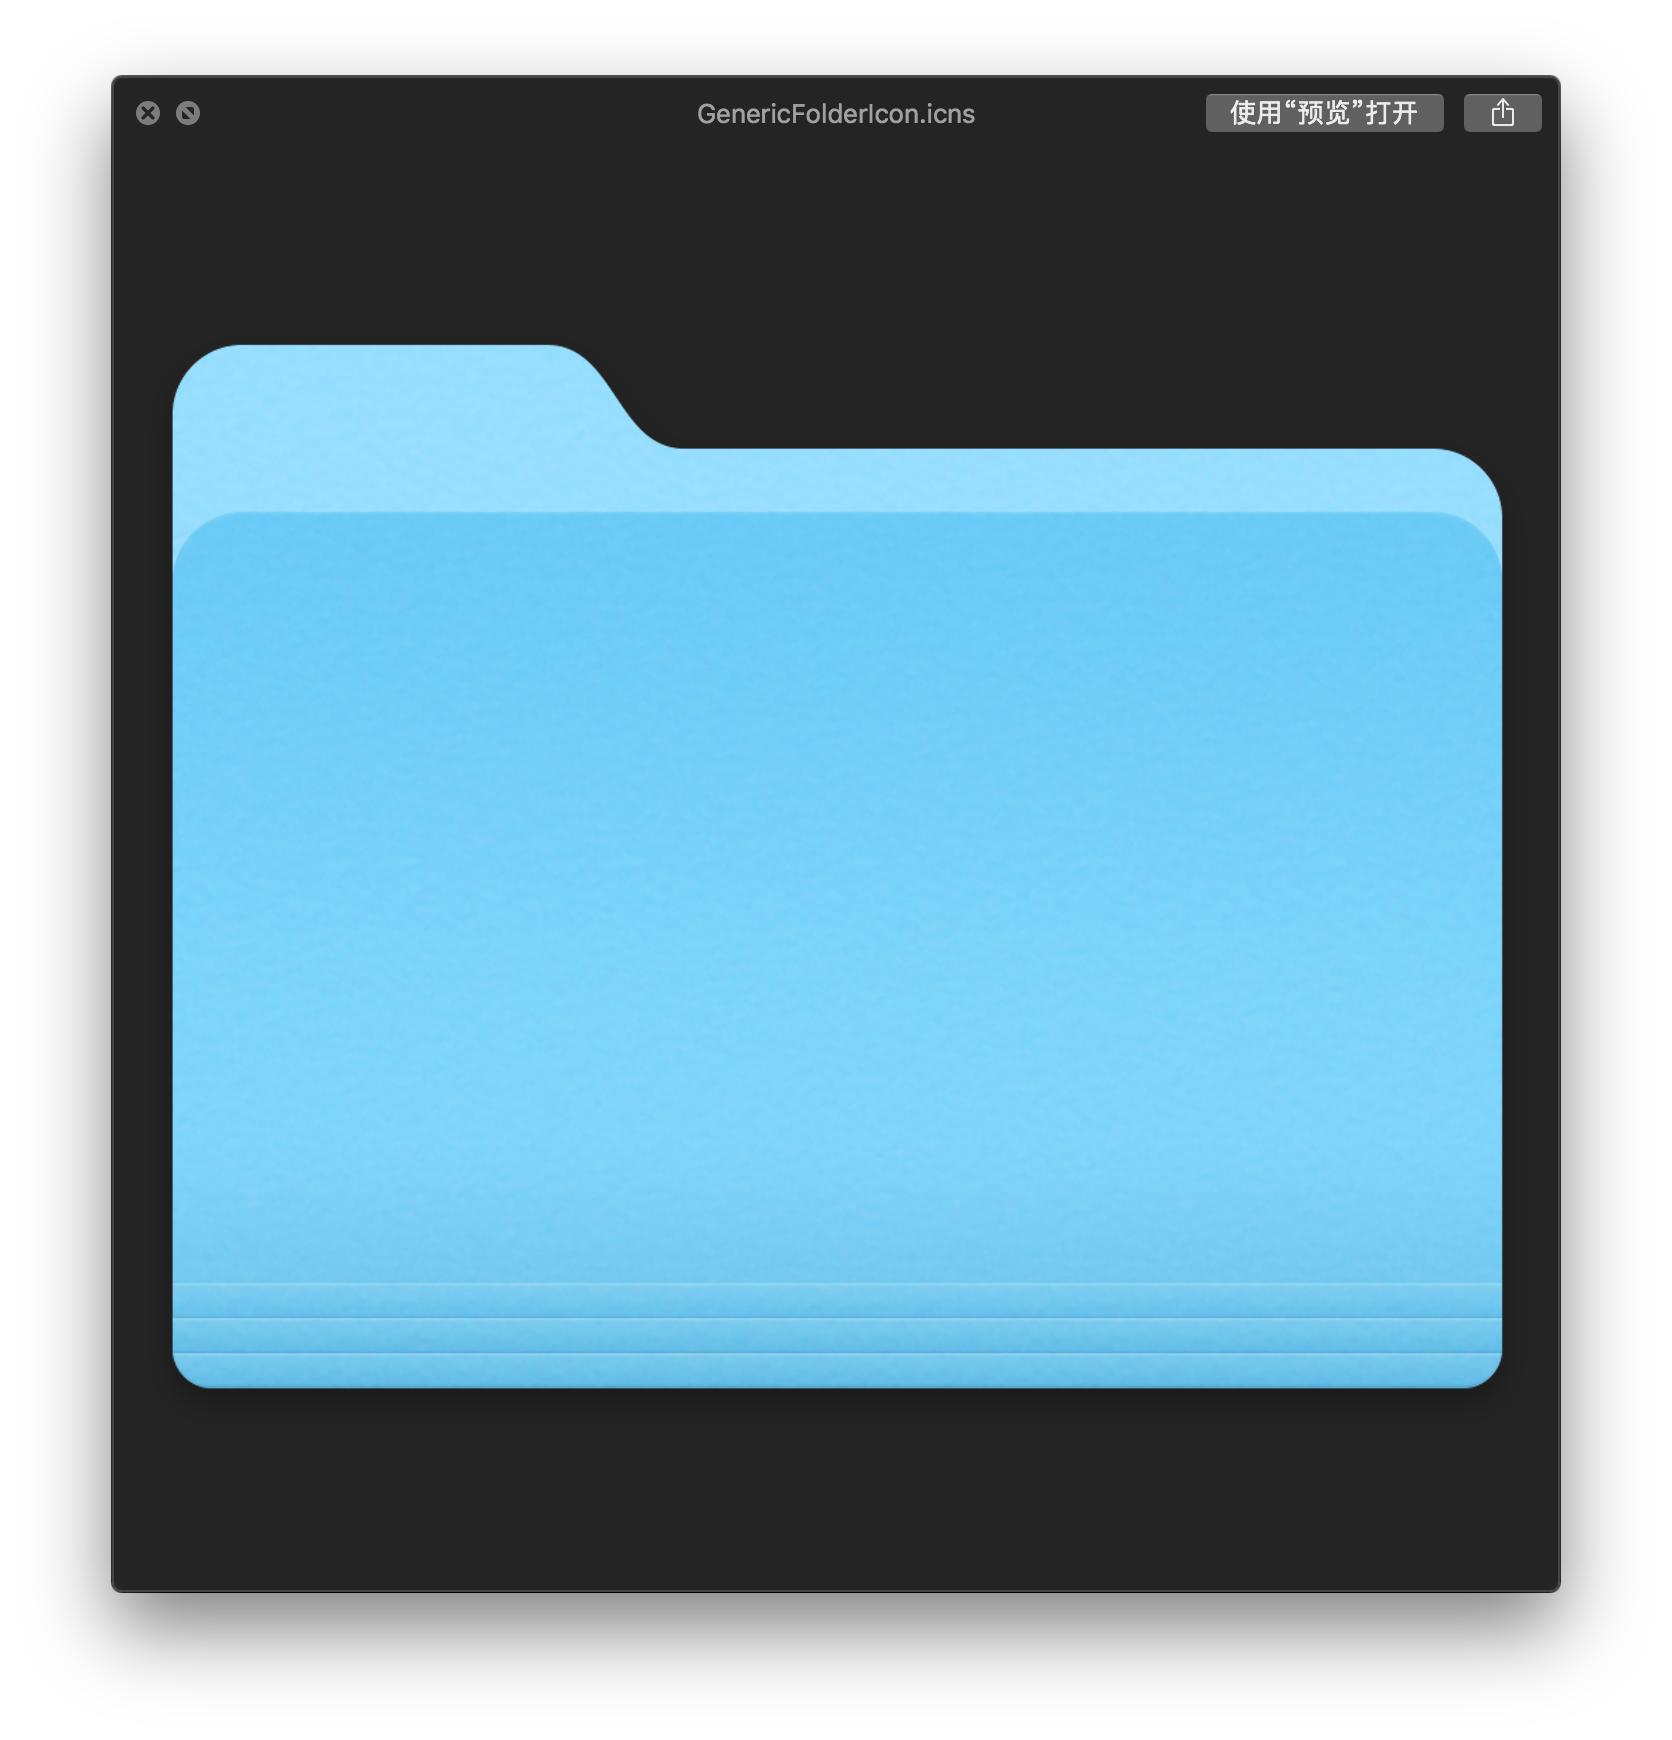 folder icons free download mac